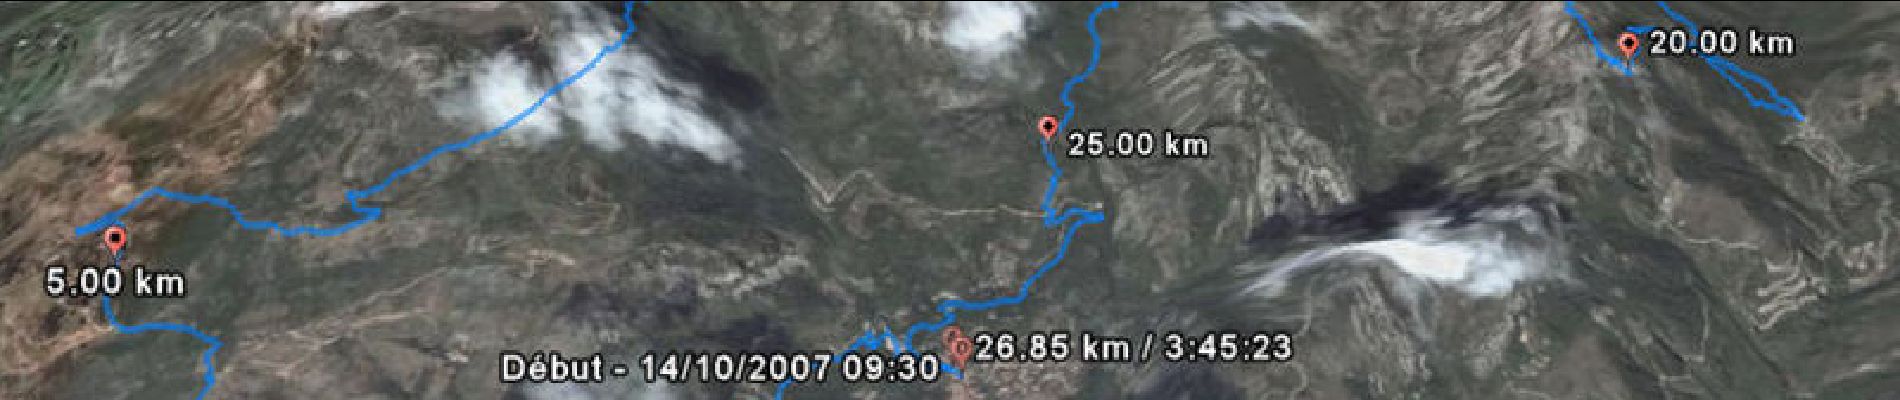 Percorso Corsa a piedi Gorbio - Trail de Gorbio 32km 2007 - Photo